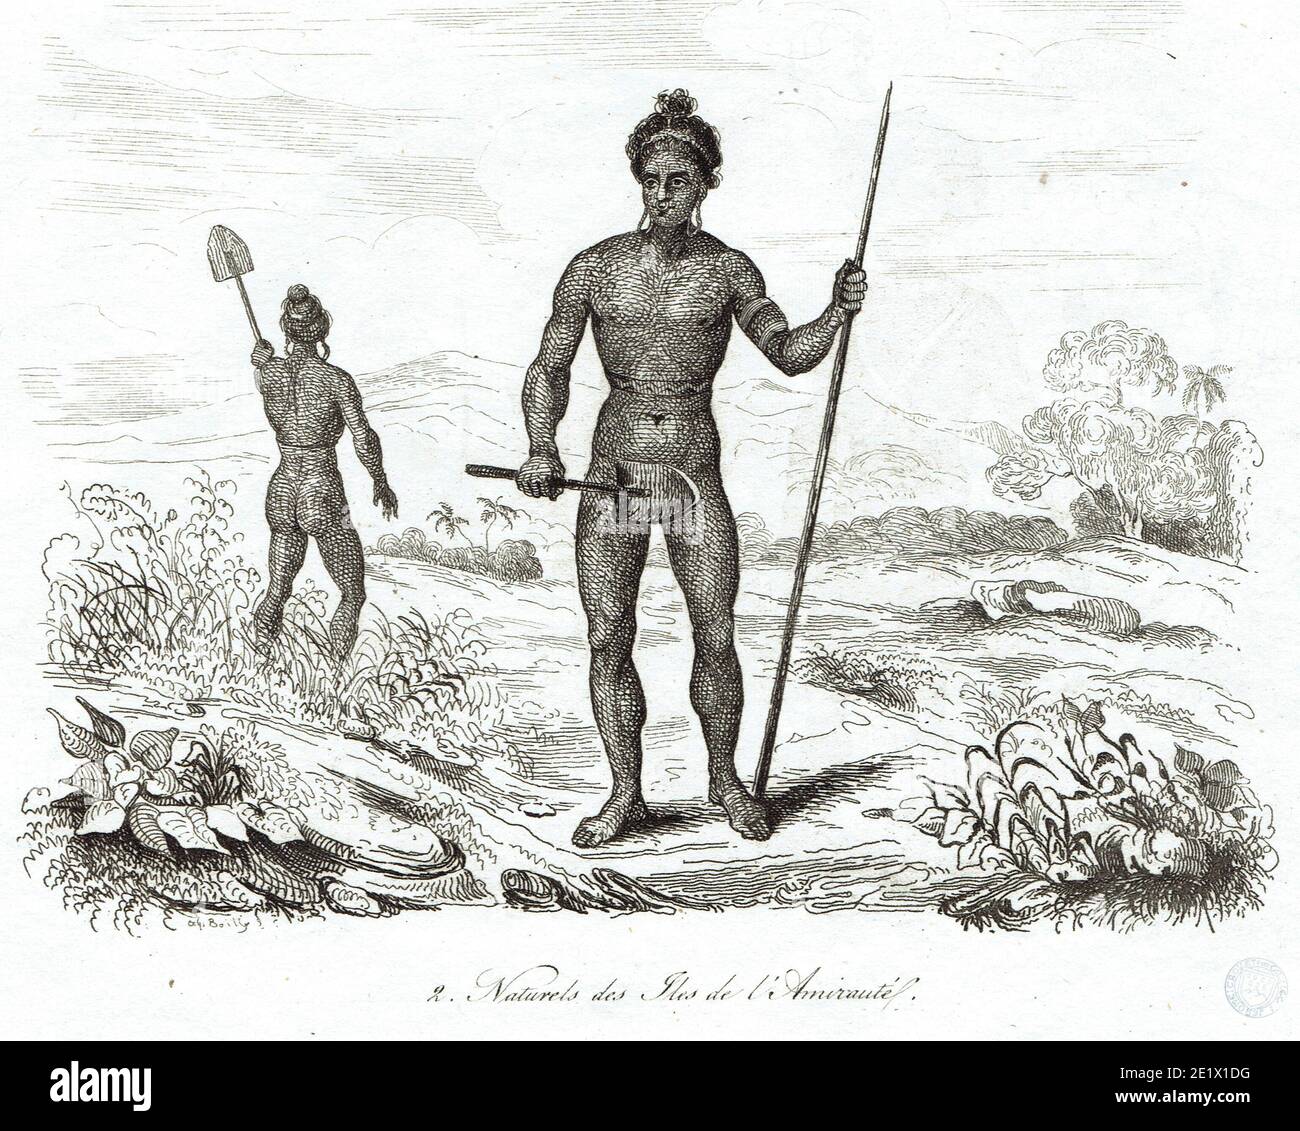 Autochtones des Iles de l'Amirauté Banque D'Images